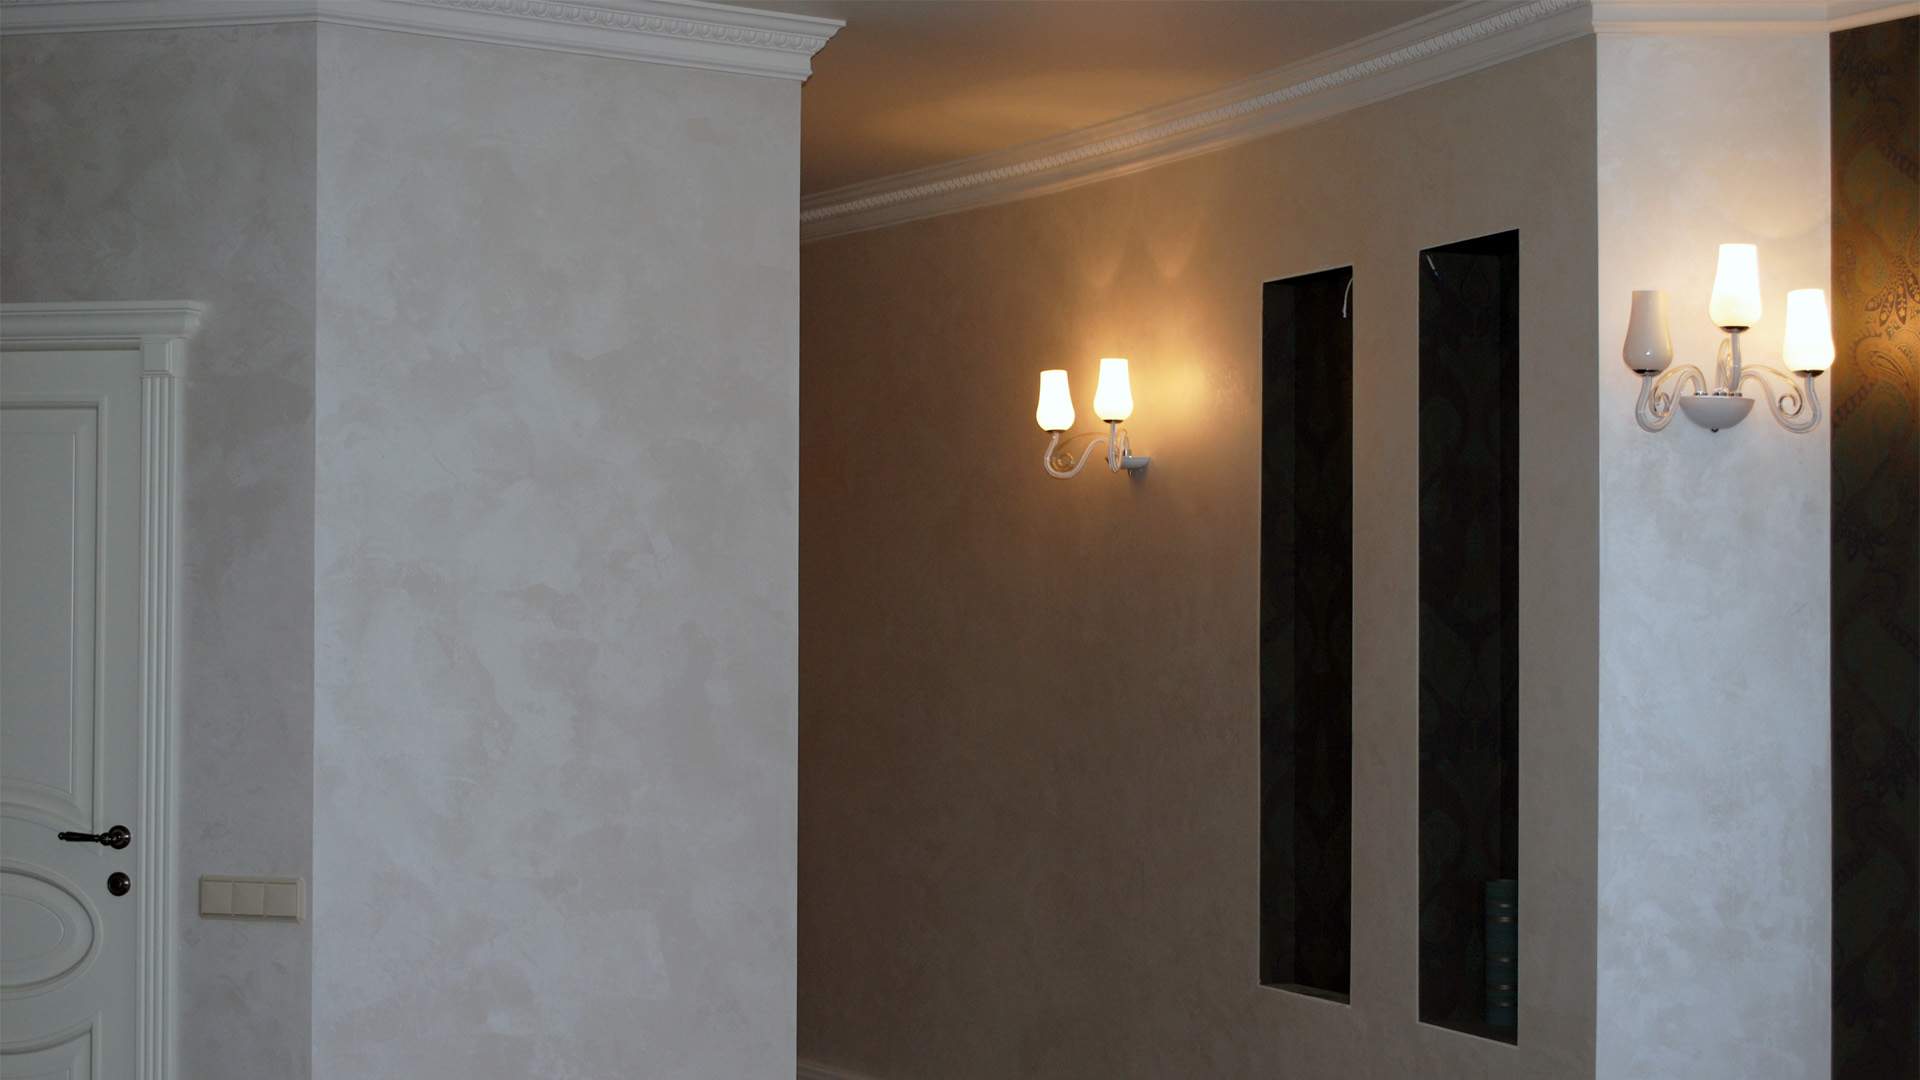 Декоративная краска для стен с эффектом шелка: как смотрится шелкография на стенах, как наносить жидкий шелк, сколько он сохнет и какова продолжительность эксплуатации